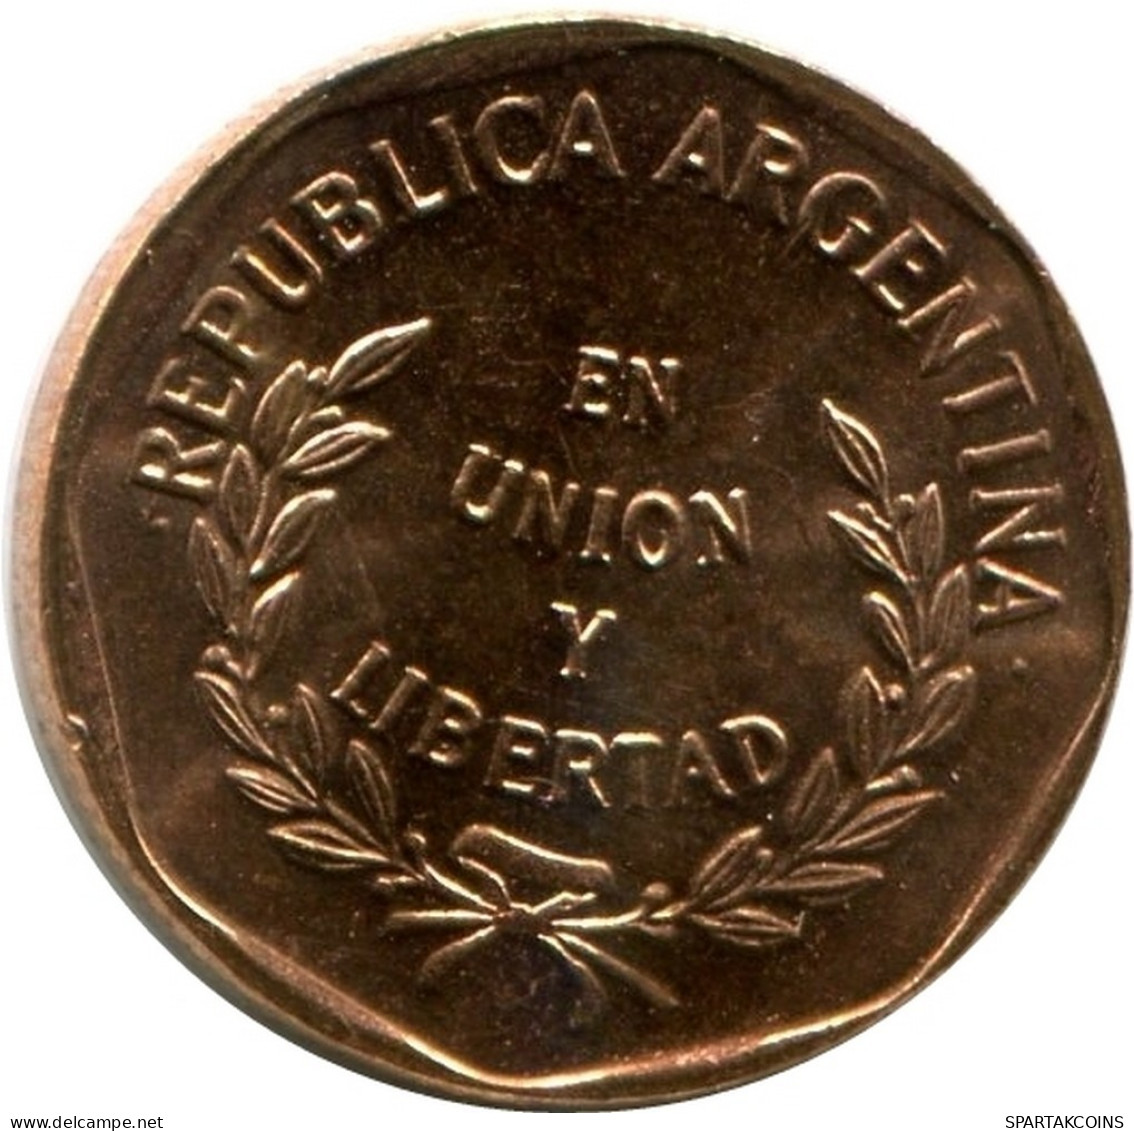 1 CENTAVO 1998 ARGENTINIEN ARGENTINA Münze UNC #M10140.D.A - Argentina